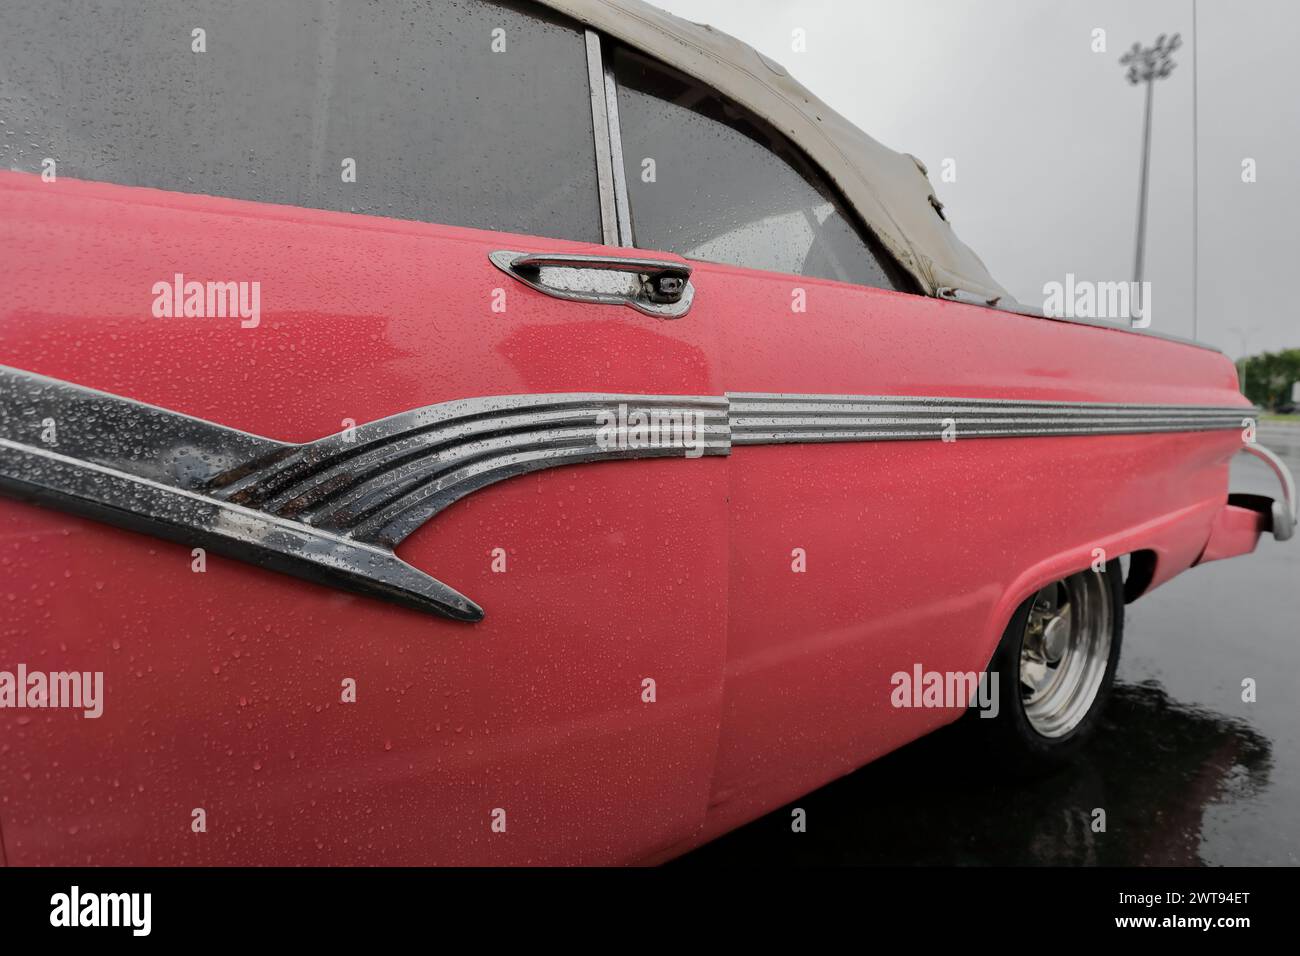 080 classica cabriolet americana lato sinistro - Ford Fairlane Sunliner rosa del 1956 - posizionata sotto la pioggia su Revolution Square. L'Avana-Cuba. Foto Stock